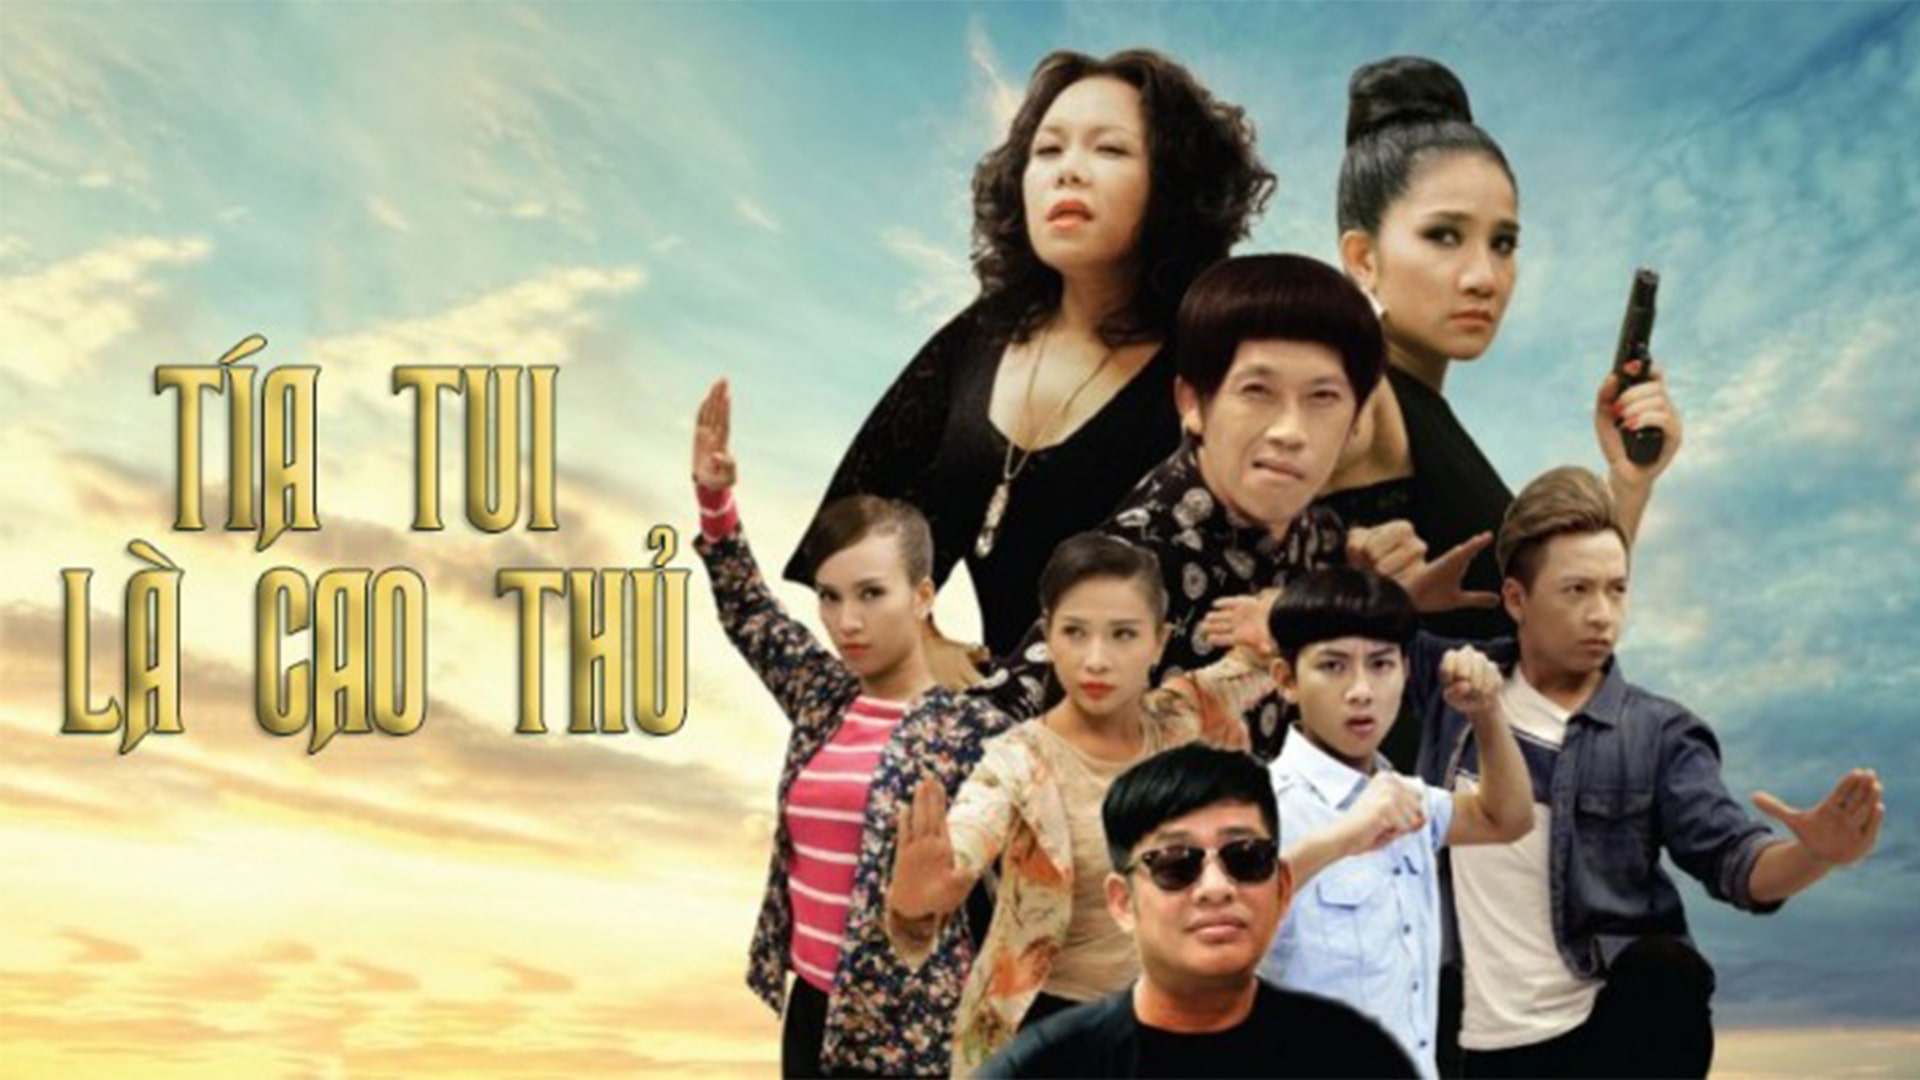 Phim điện ảnh Tía Tui Là Cao Thủ 2015